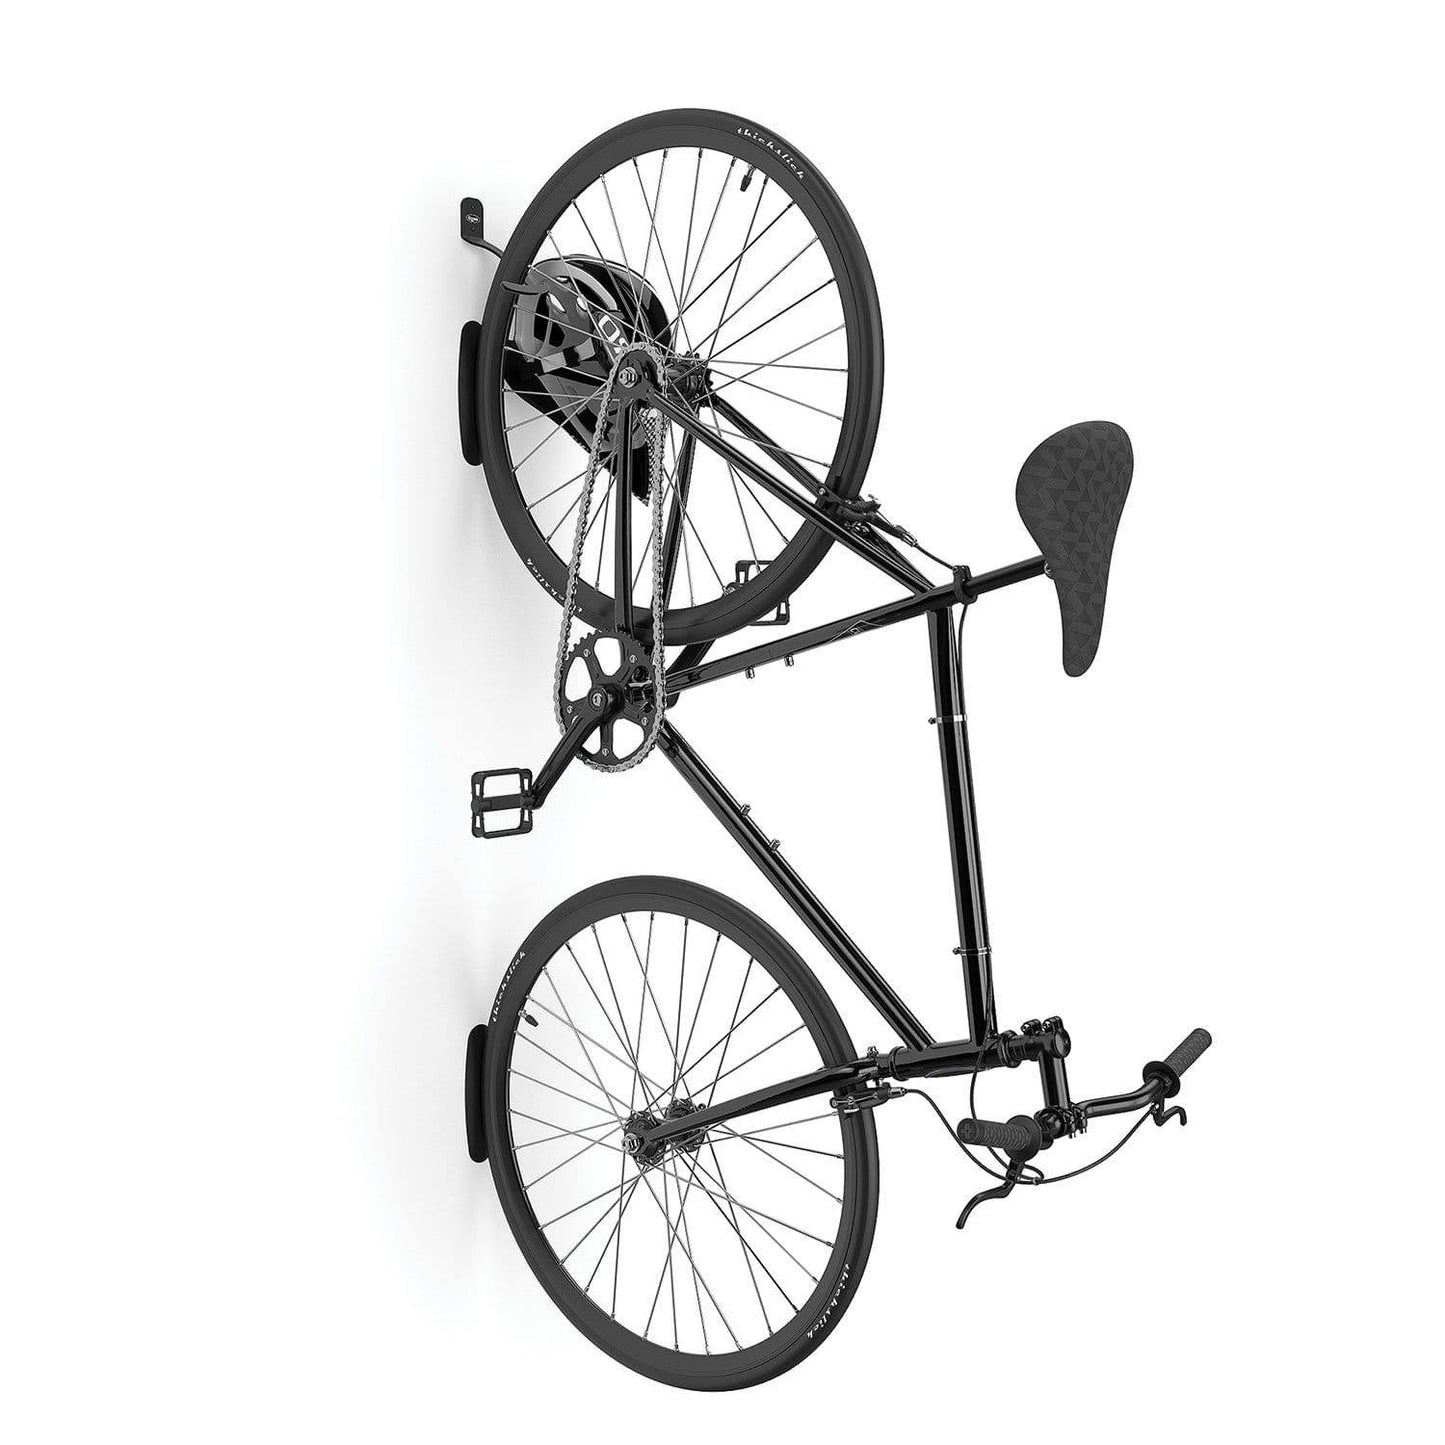 Single bike hook - wall mounted for vertical storage of one bike